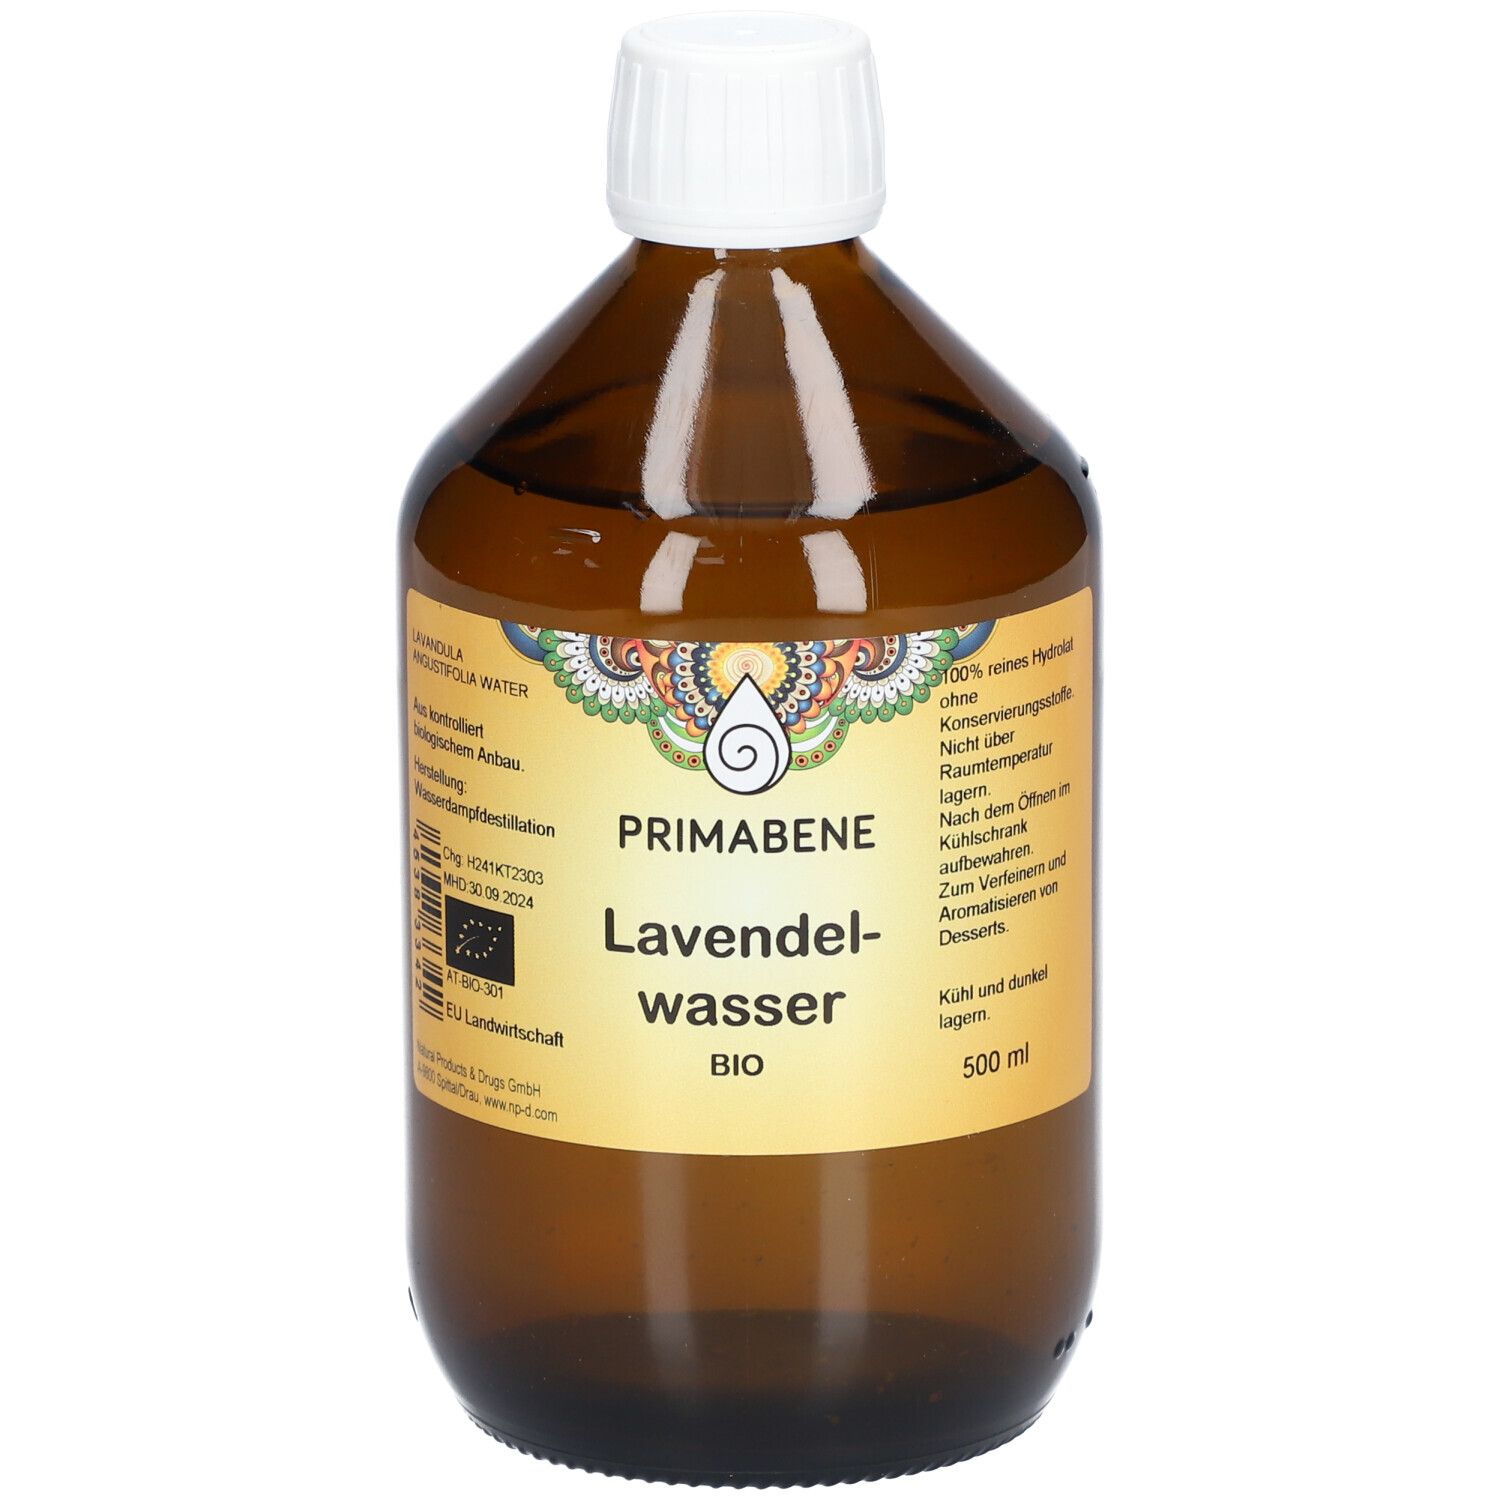 PRIMABENE Lavendelwasser BIO